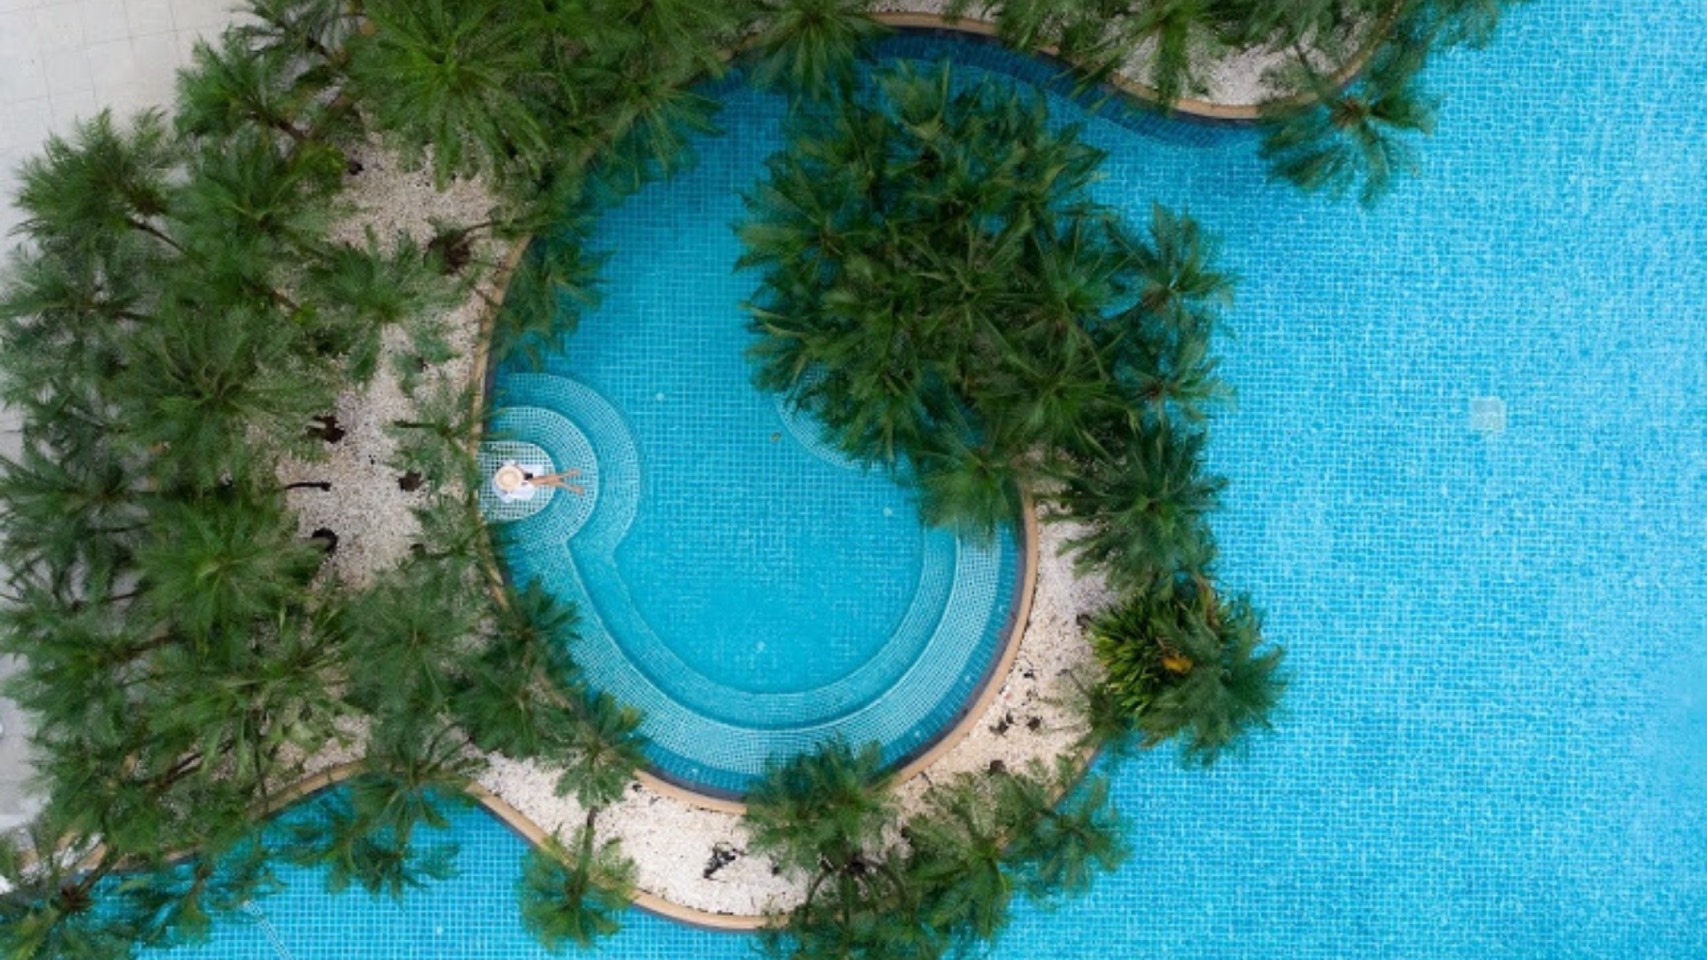 Plus playa el agua 5. Отель Duangjitt Resort & Spa 5. SUNSOL Ecoland 4*. Дуанджит Пхукет горки есть.